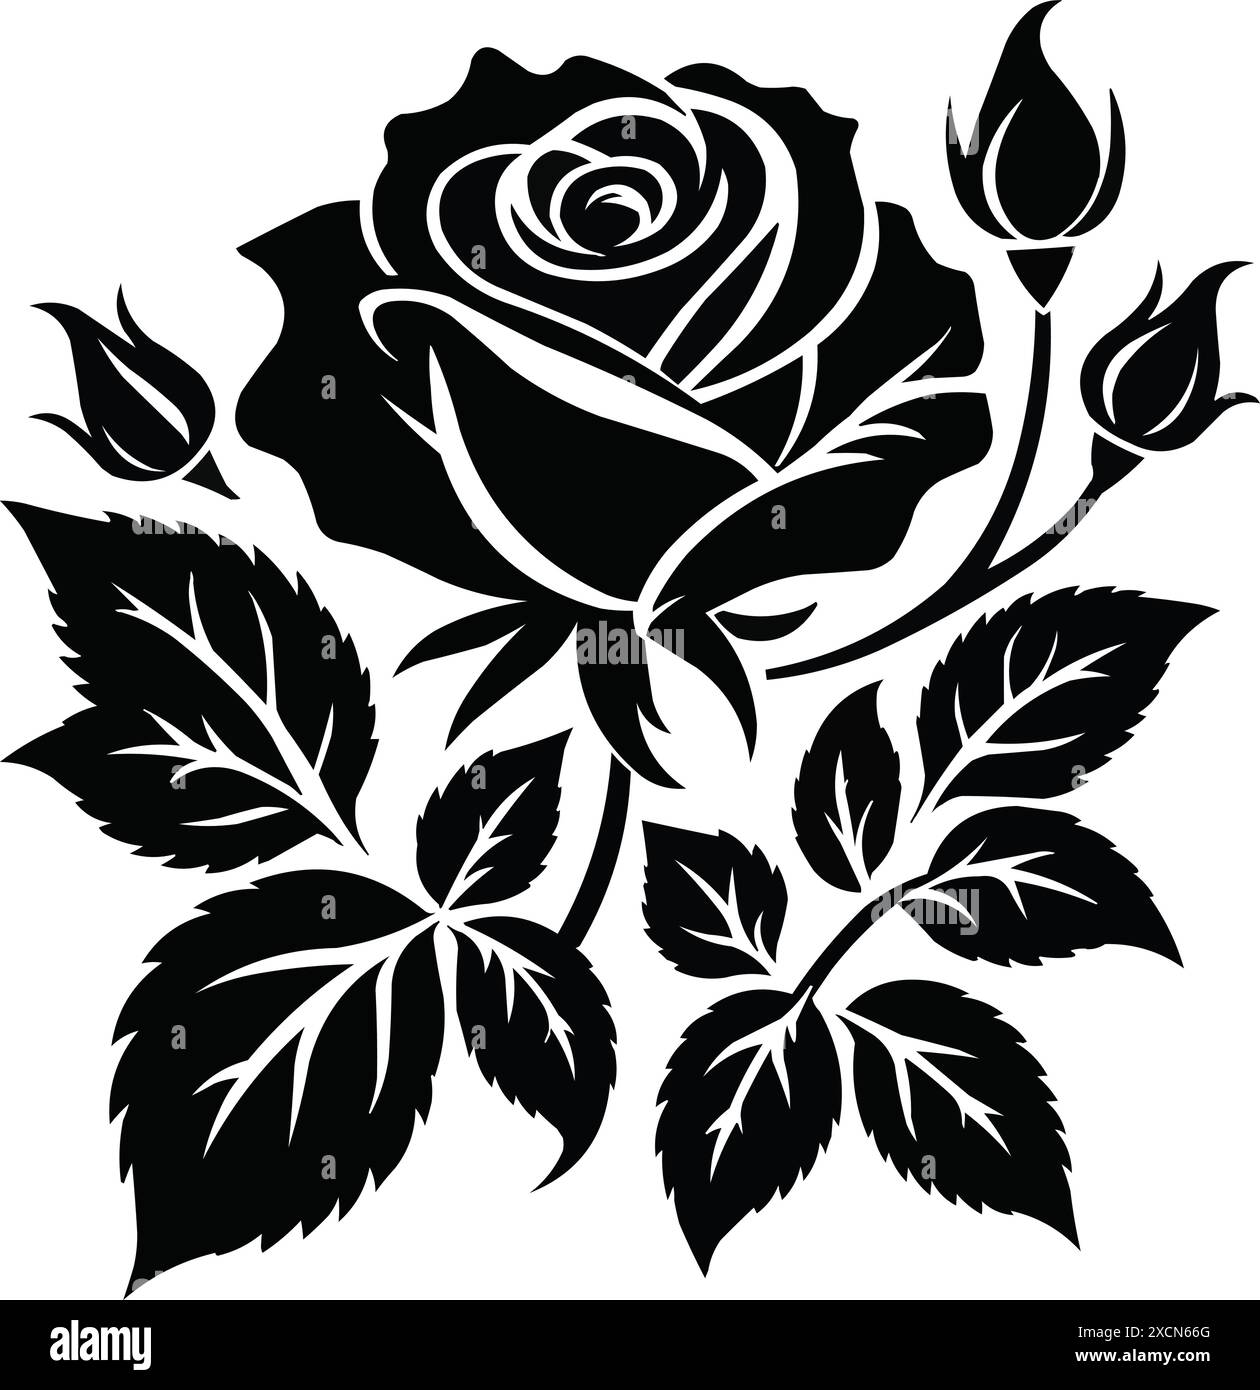 Ensemble de fleurs roses décoratives avec feuilles silhouette noire d'isolé sur un fond blanc Illustration de Vecteur